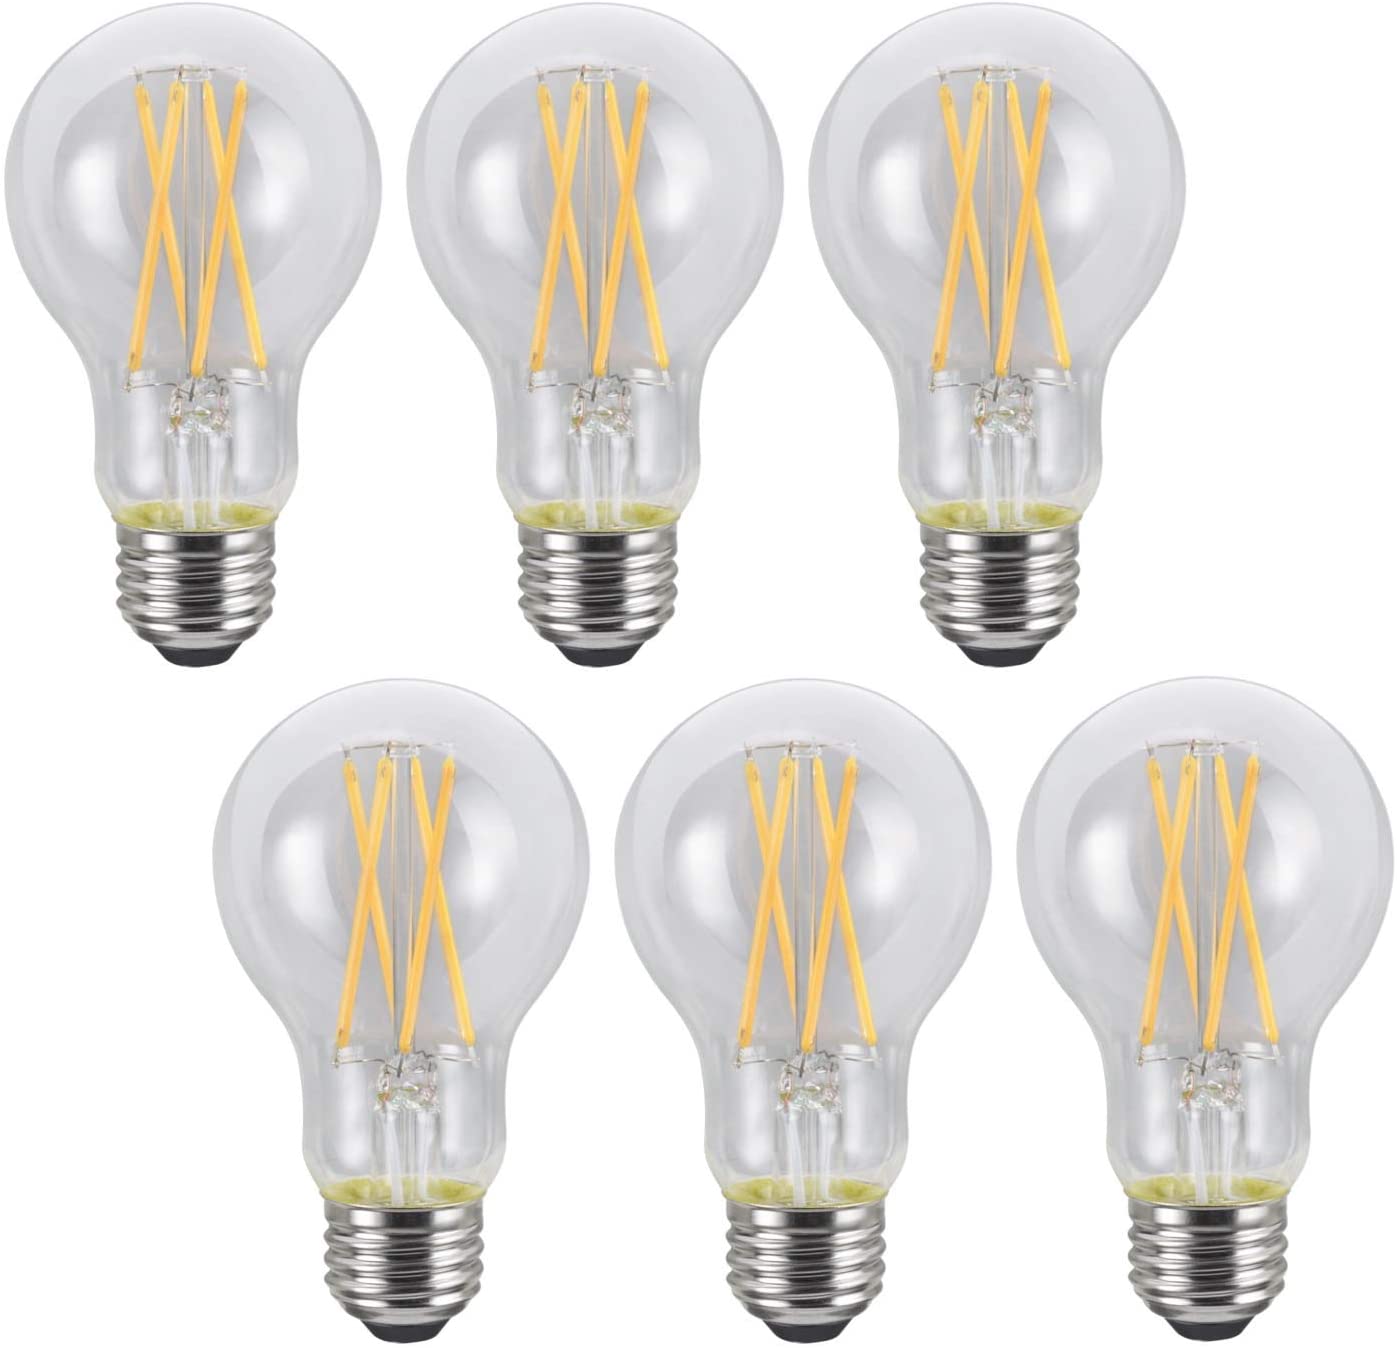 LIT-PaTH LED Edison Light, Vintage Filament Bulb, A19 9W (60W Equivalent) 800 Lumen, Dimmable, 2700K, E26 Base, 6-Pack